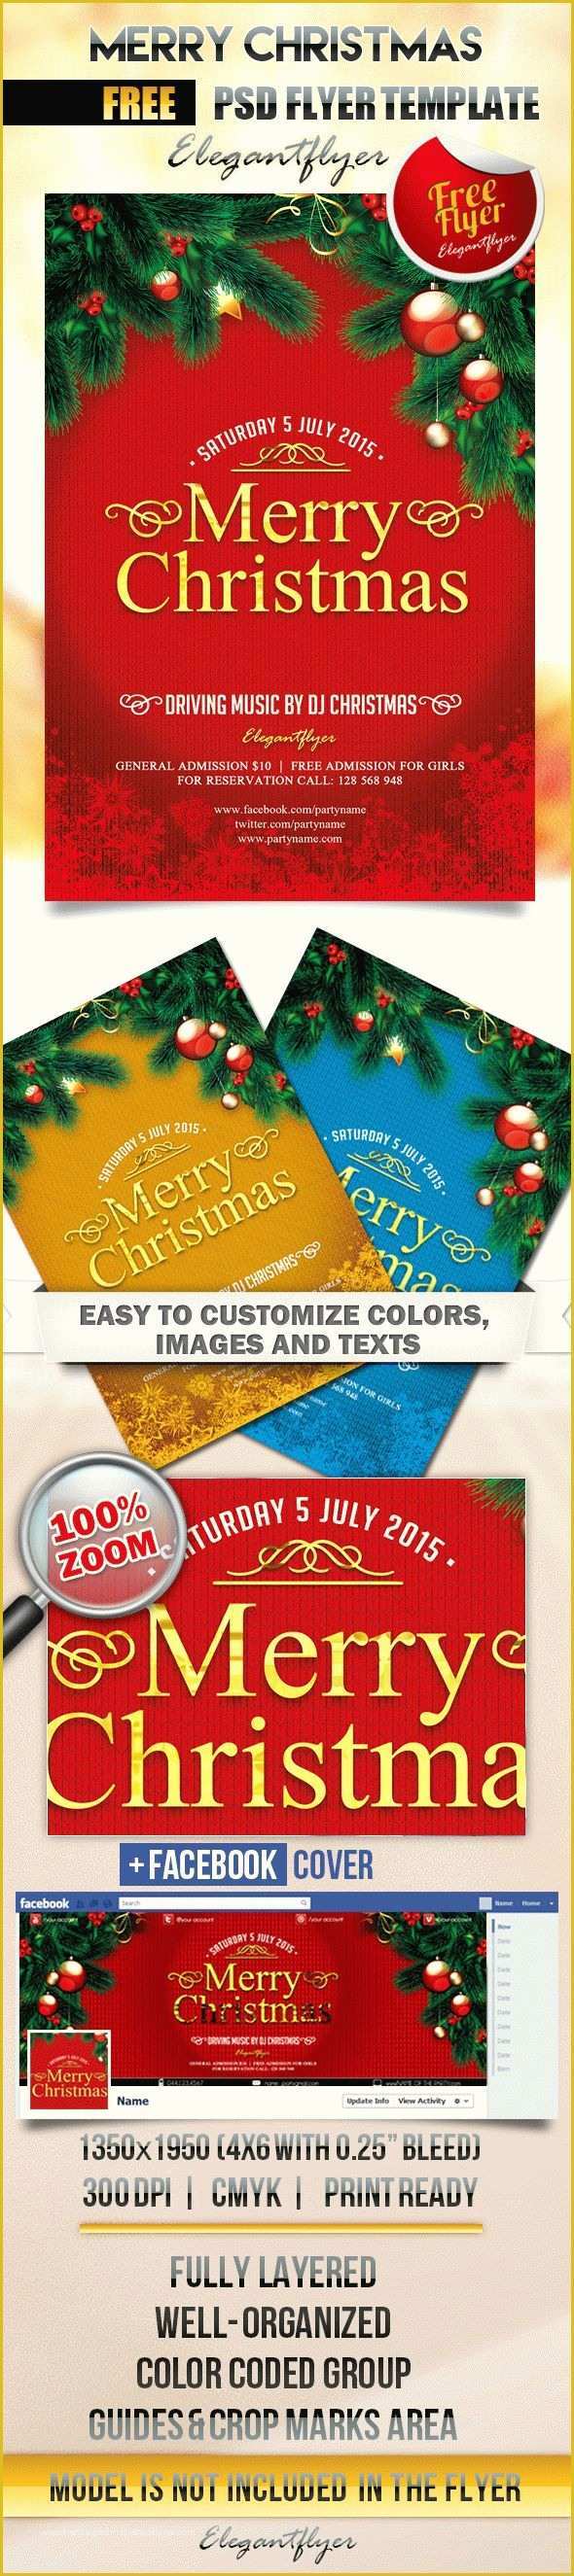 Free Printable Christmas Flyers Templates Of Free Printable Christmas Tree Template – by Elegantflyer